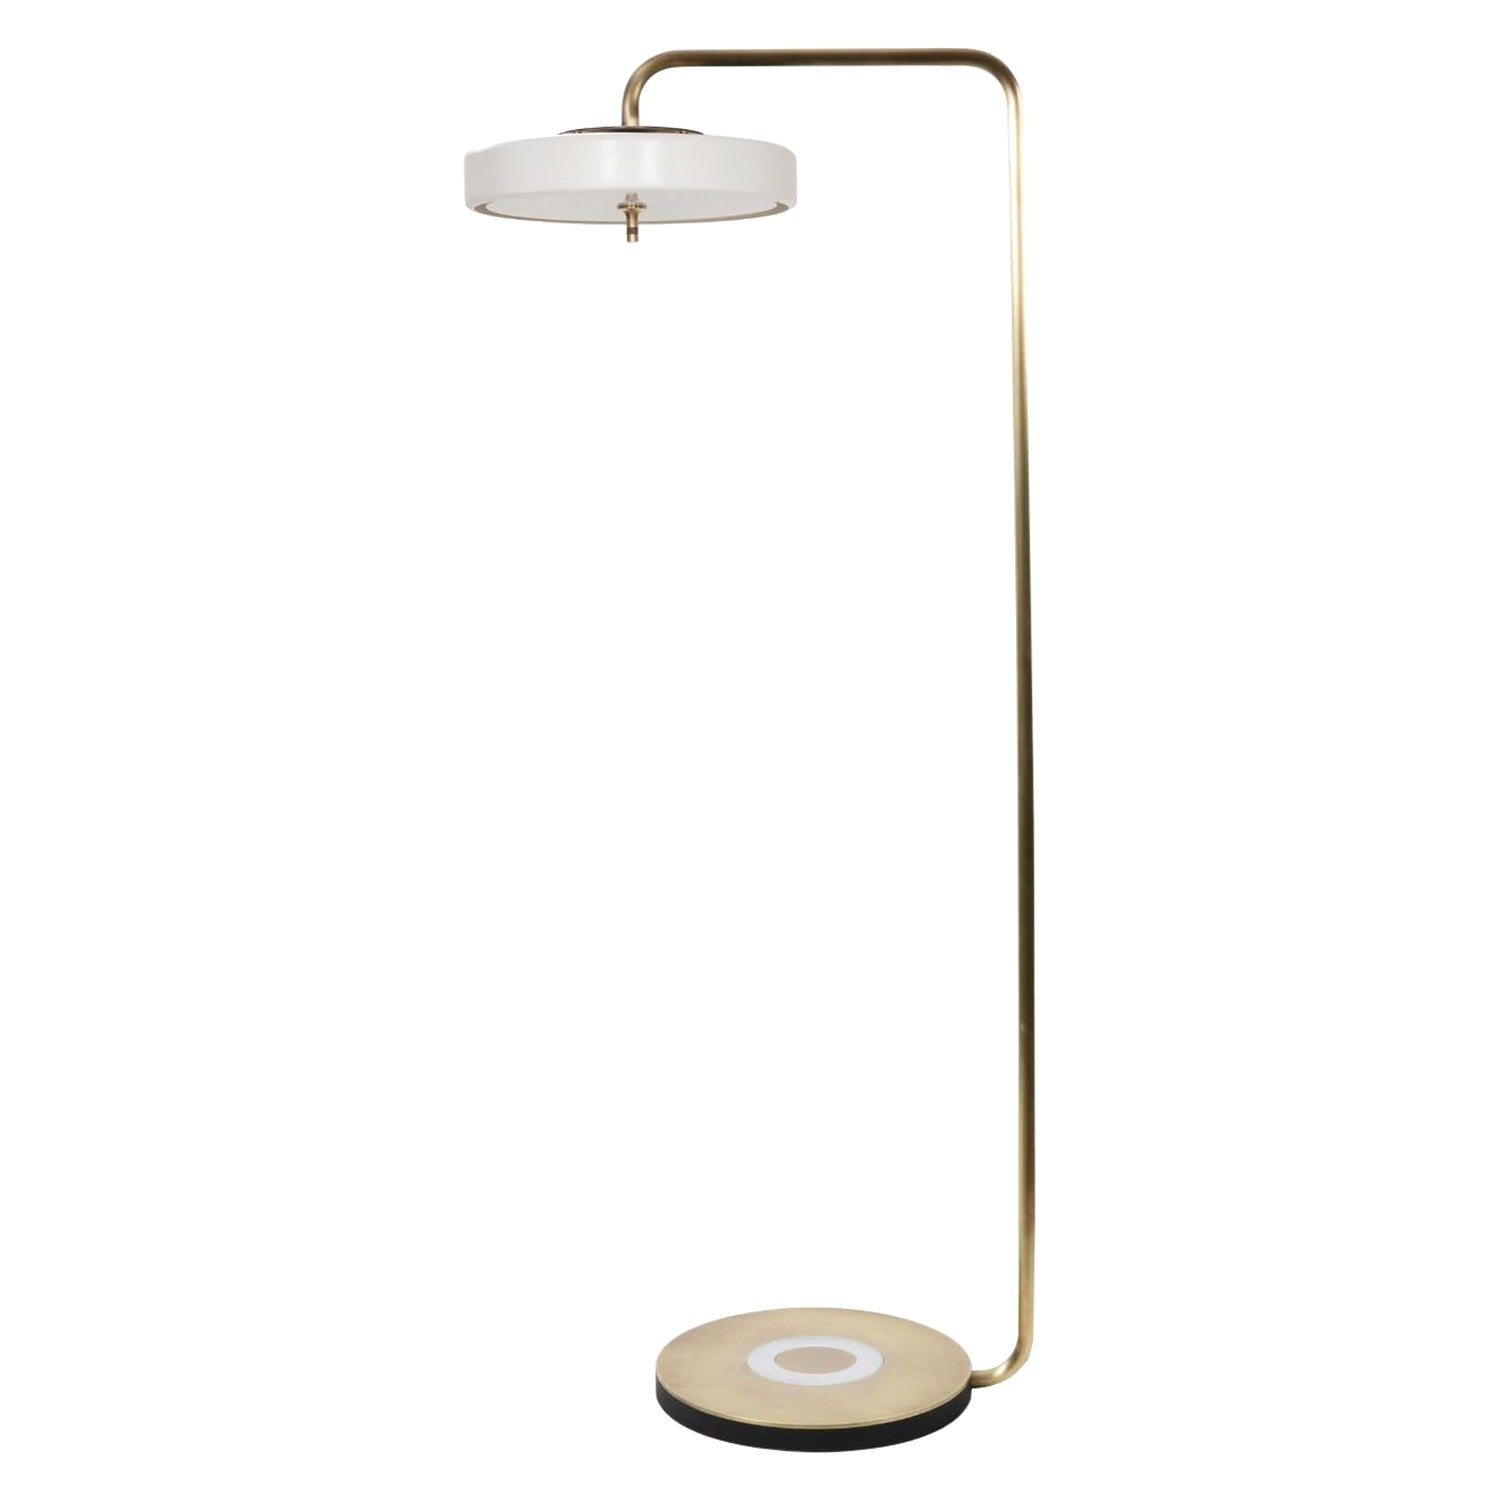 Revolve Floor Lamp, Brushed Brass, White by Bert Frank